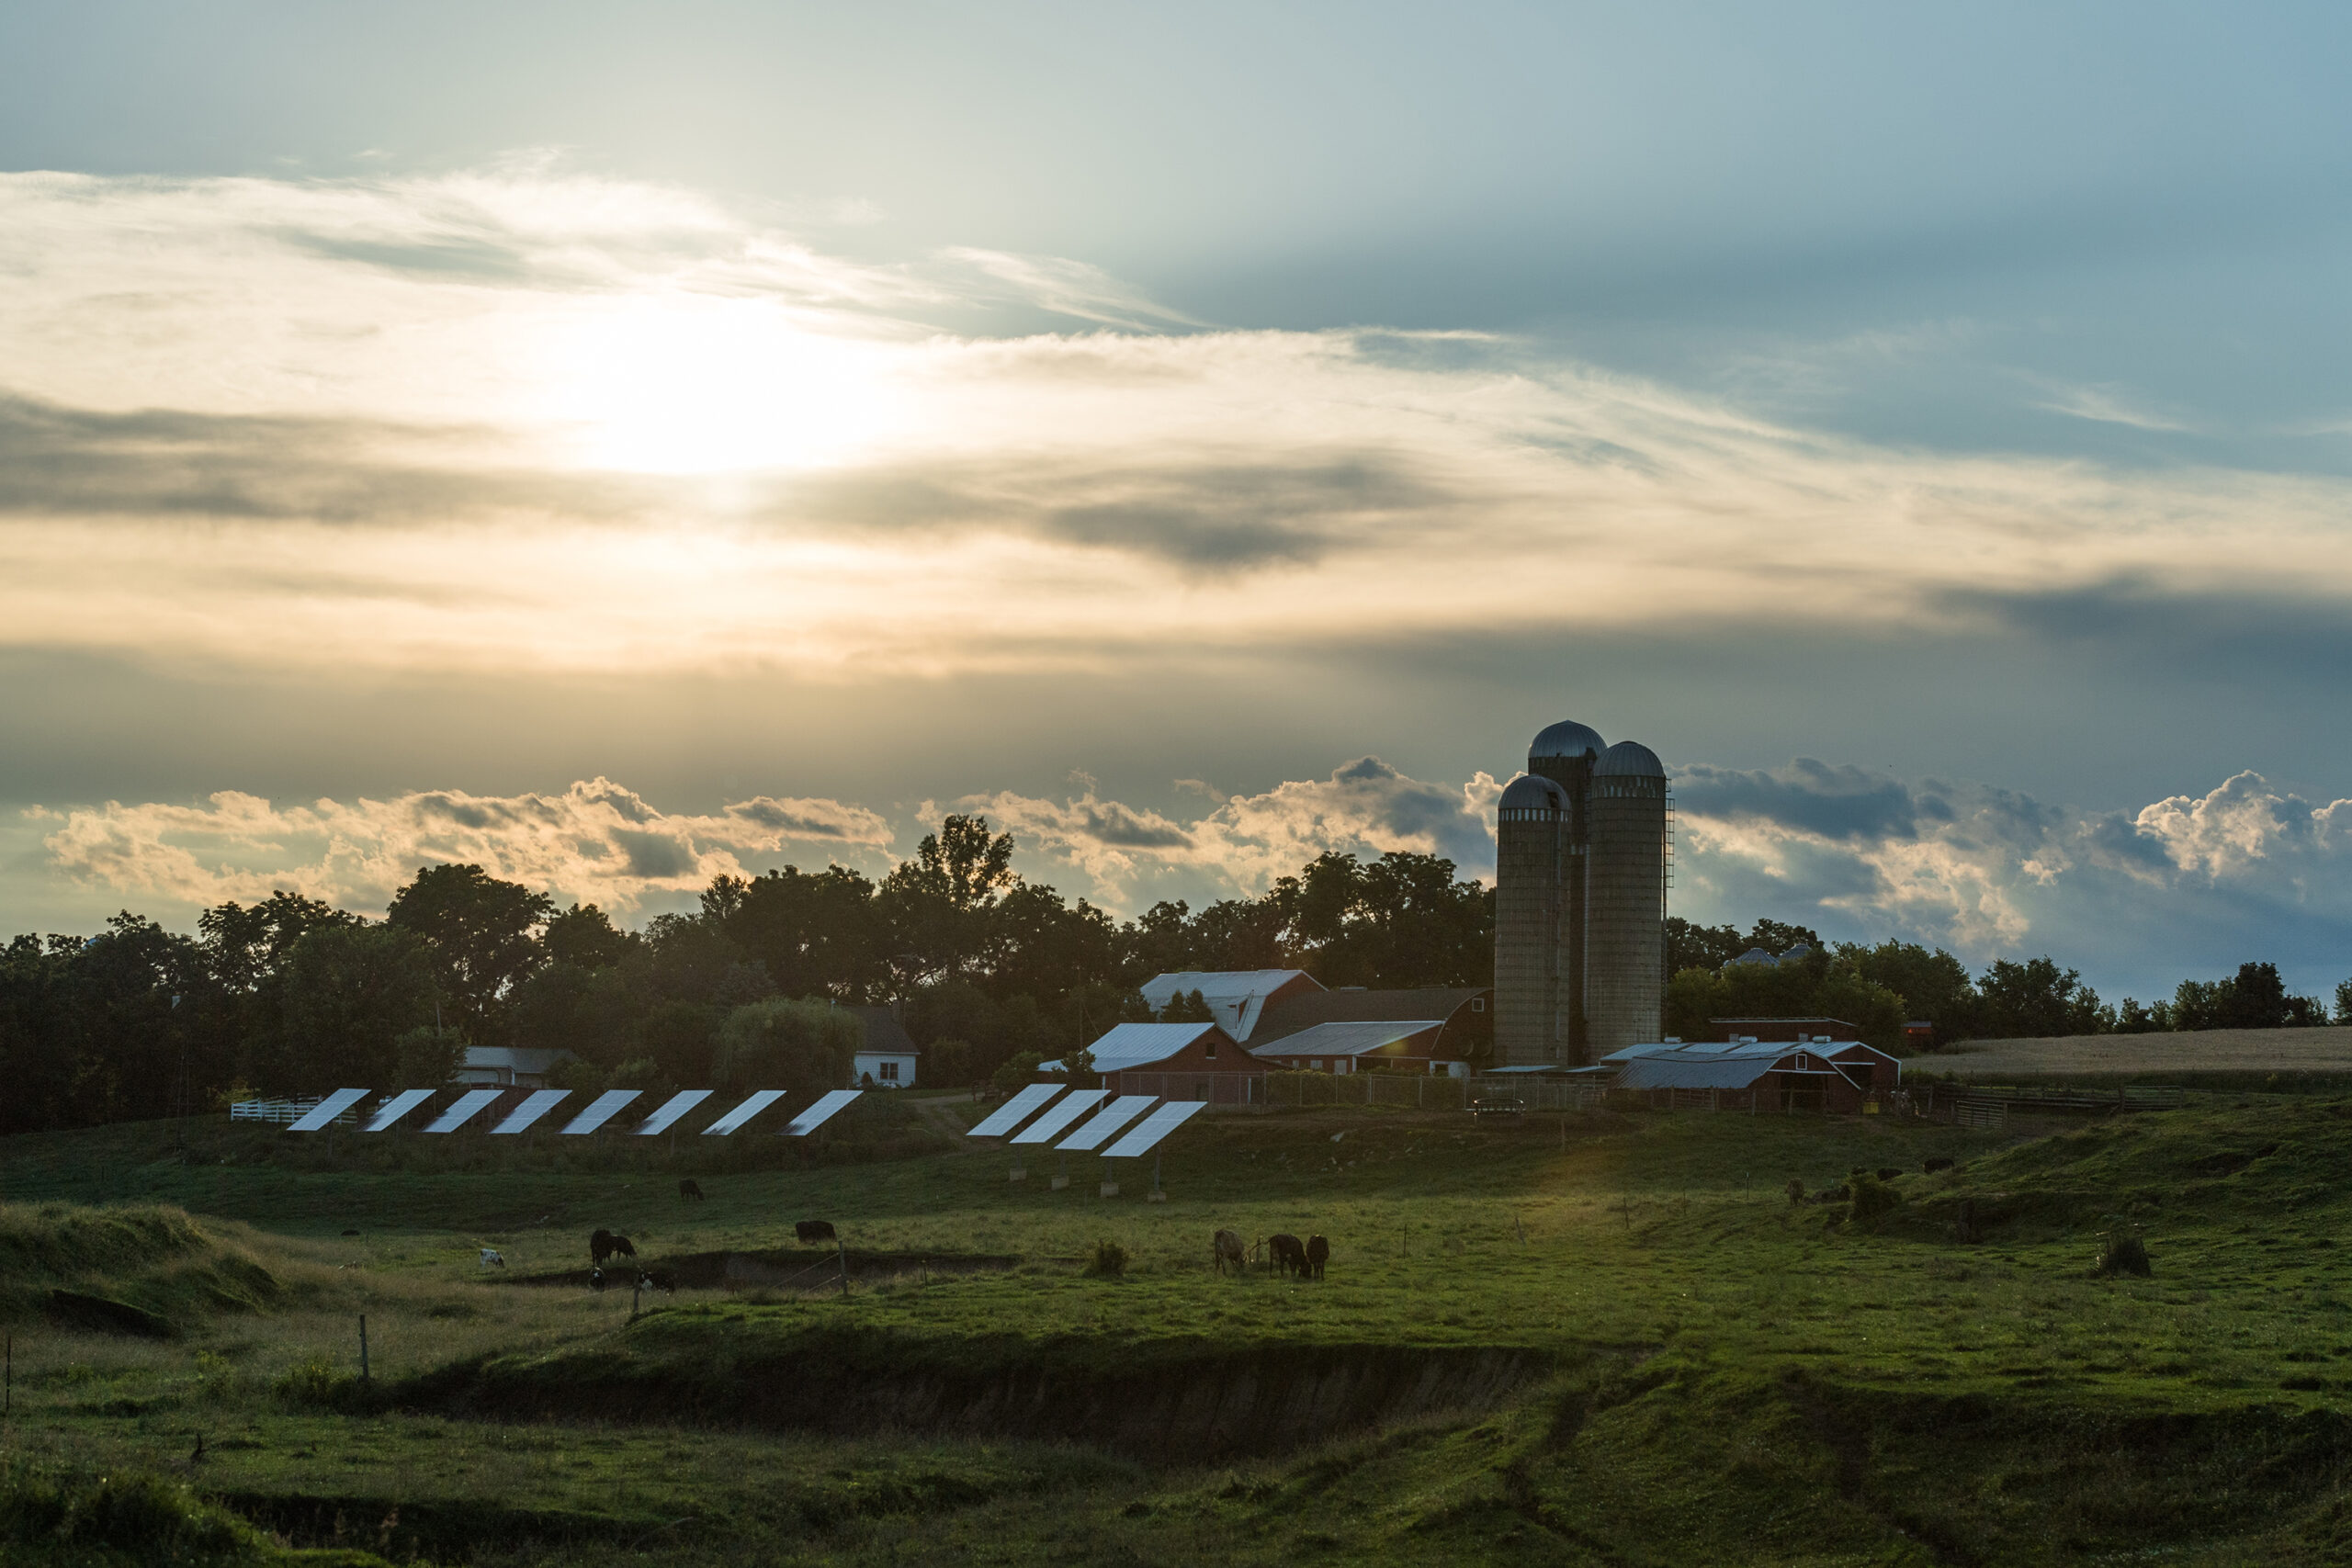 A farm with solar panels